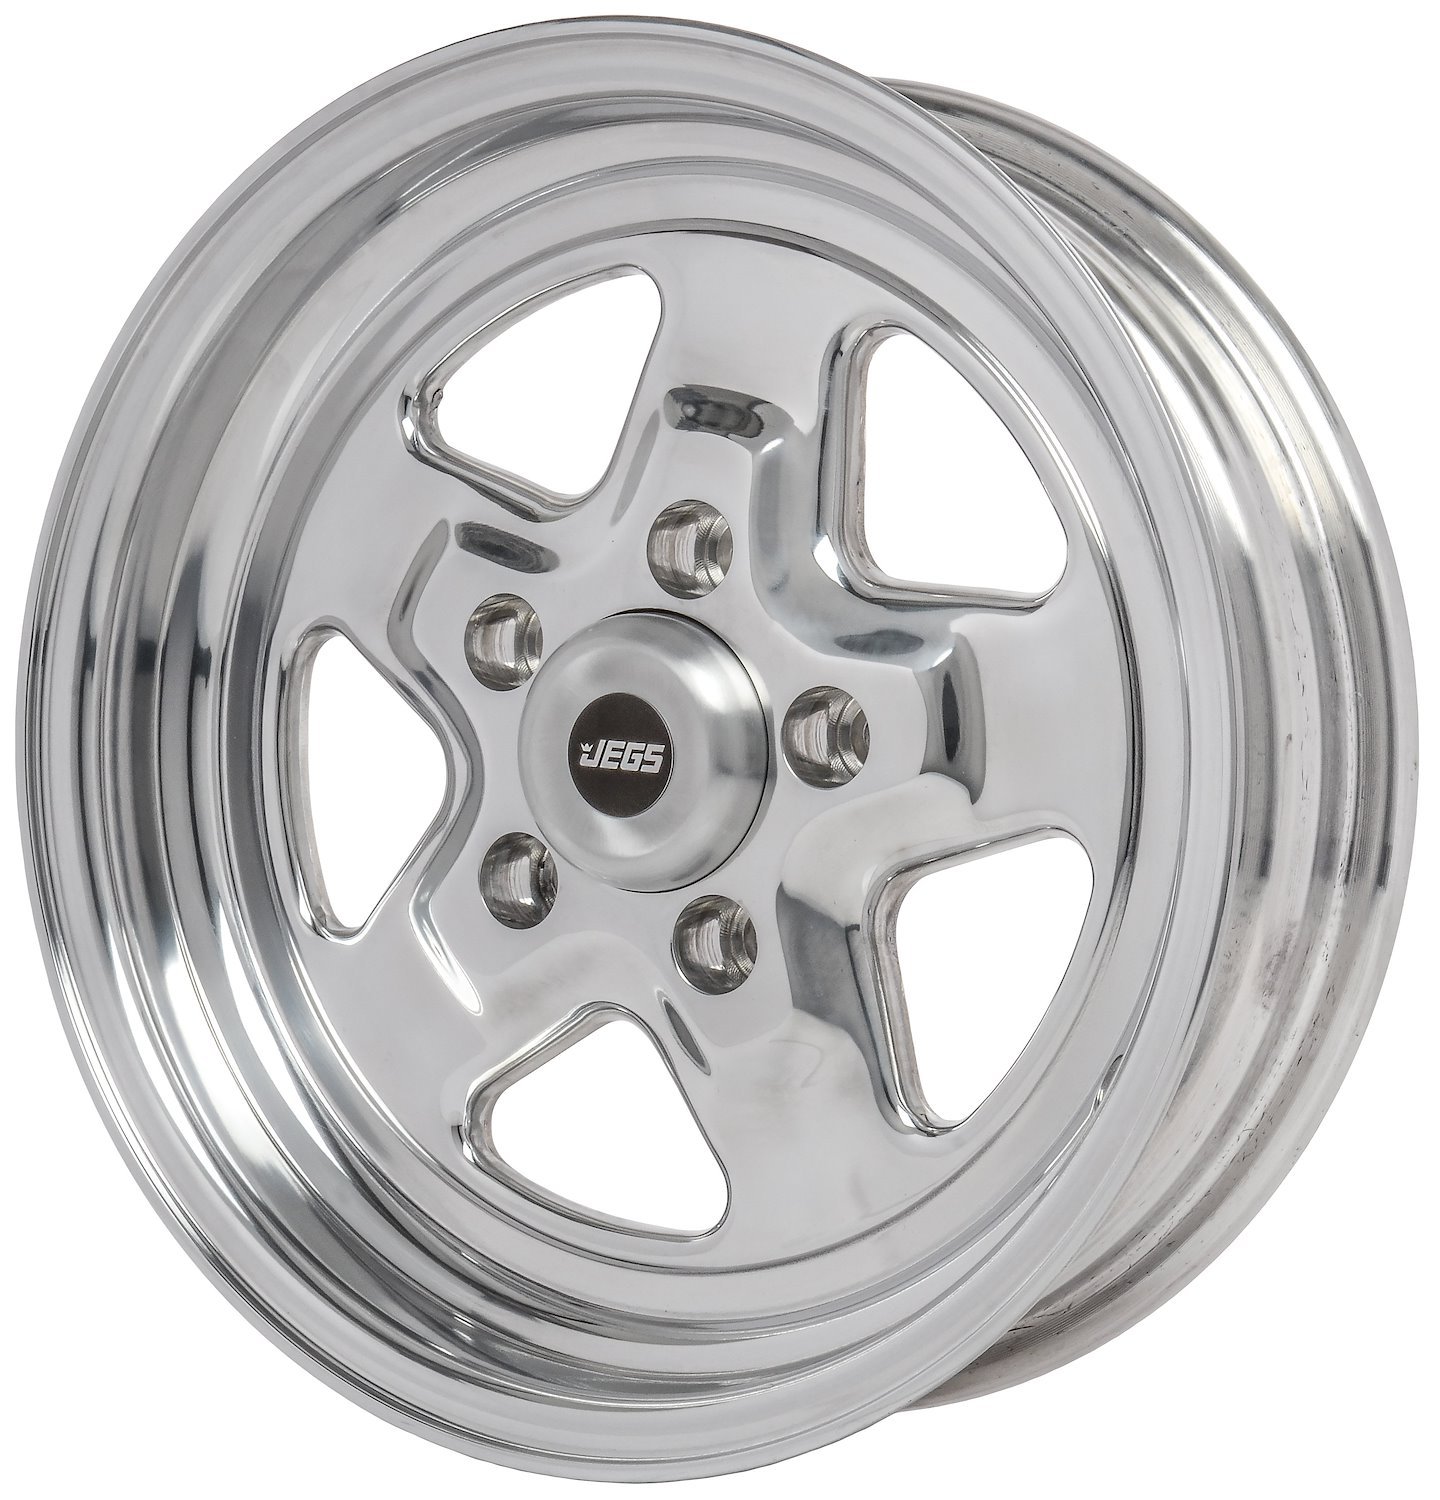 Sport Star 5-Spoke Wheel [Size: 15